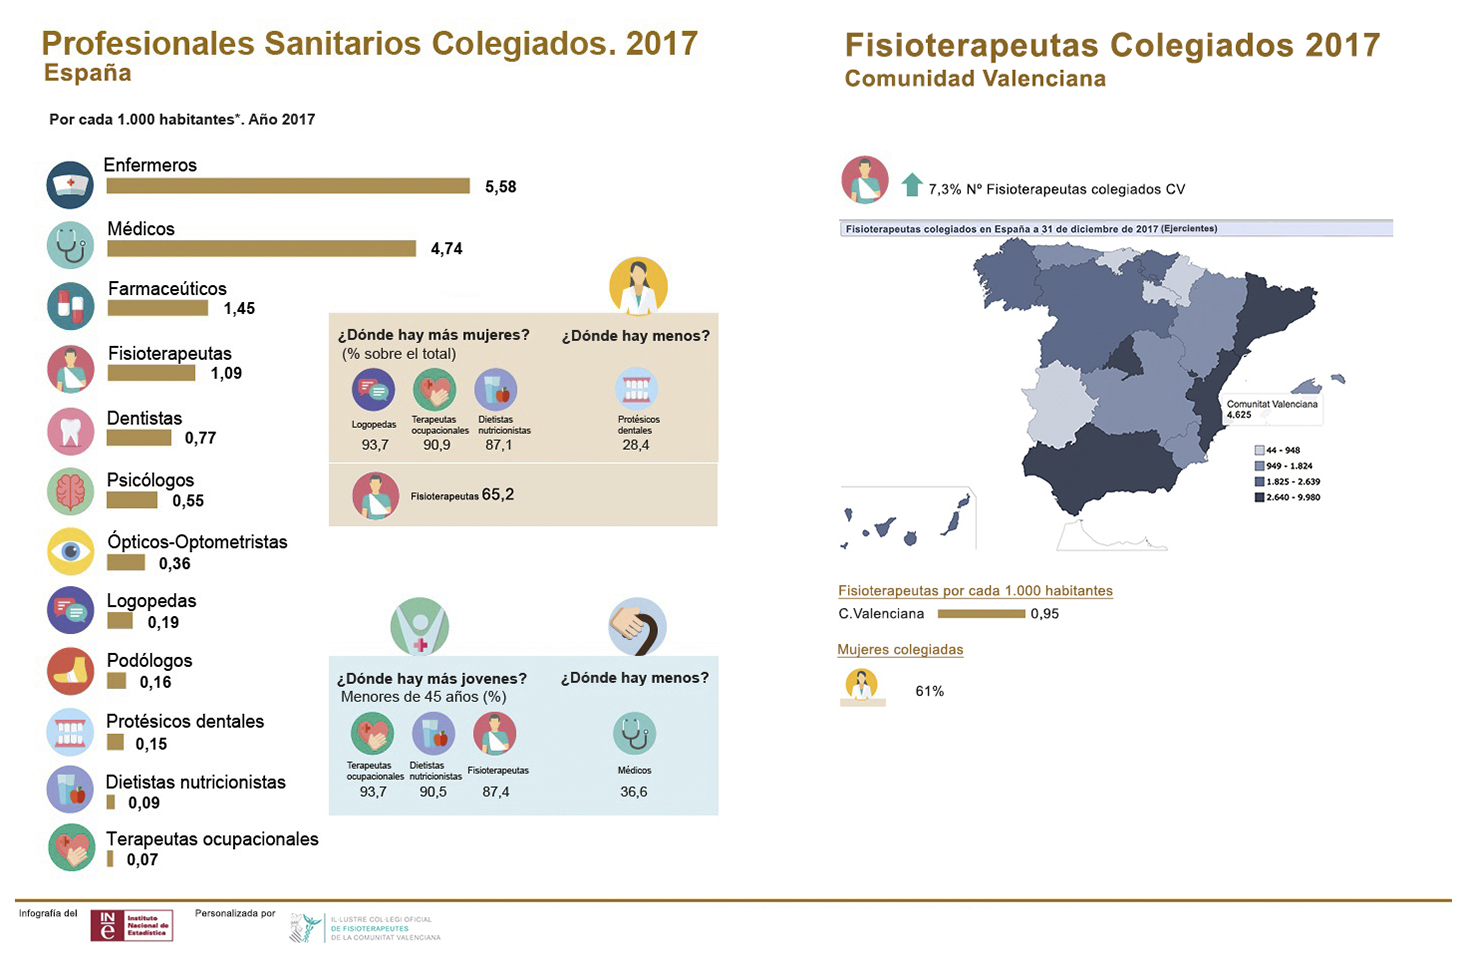 El número de fisioterapeutas colegiados en España aumentó un 6,1% y en la C. Valenciana un 7,3% en 2017